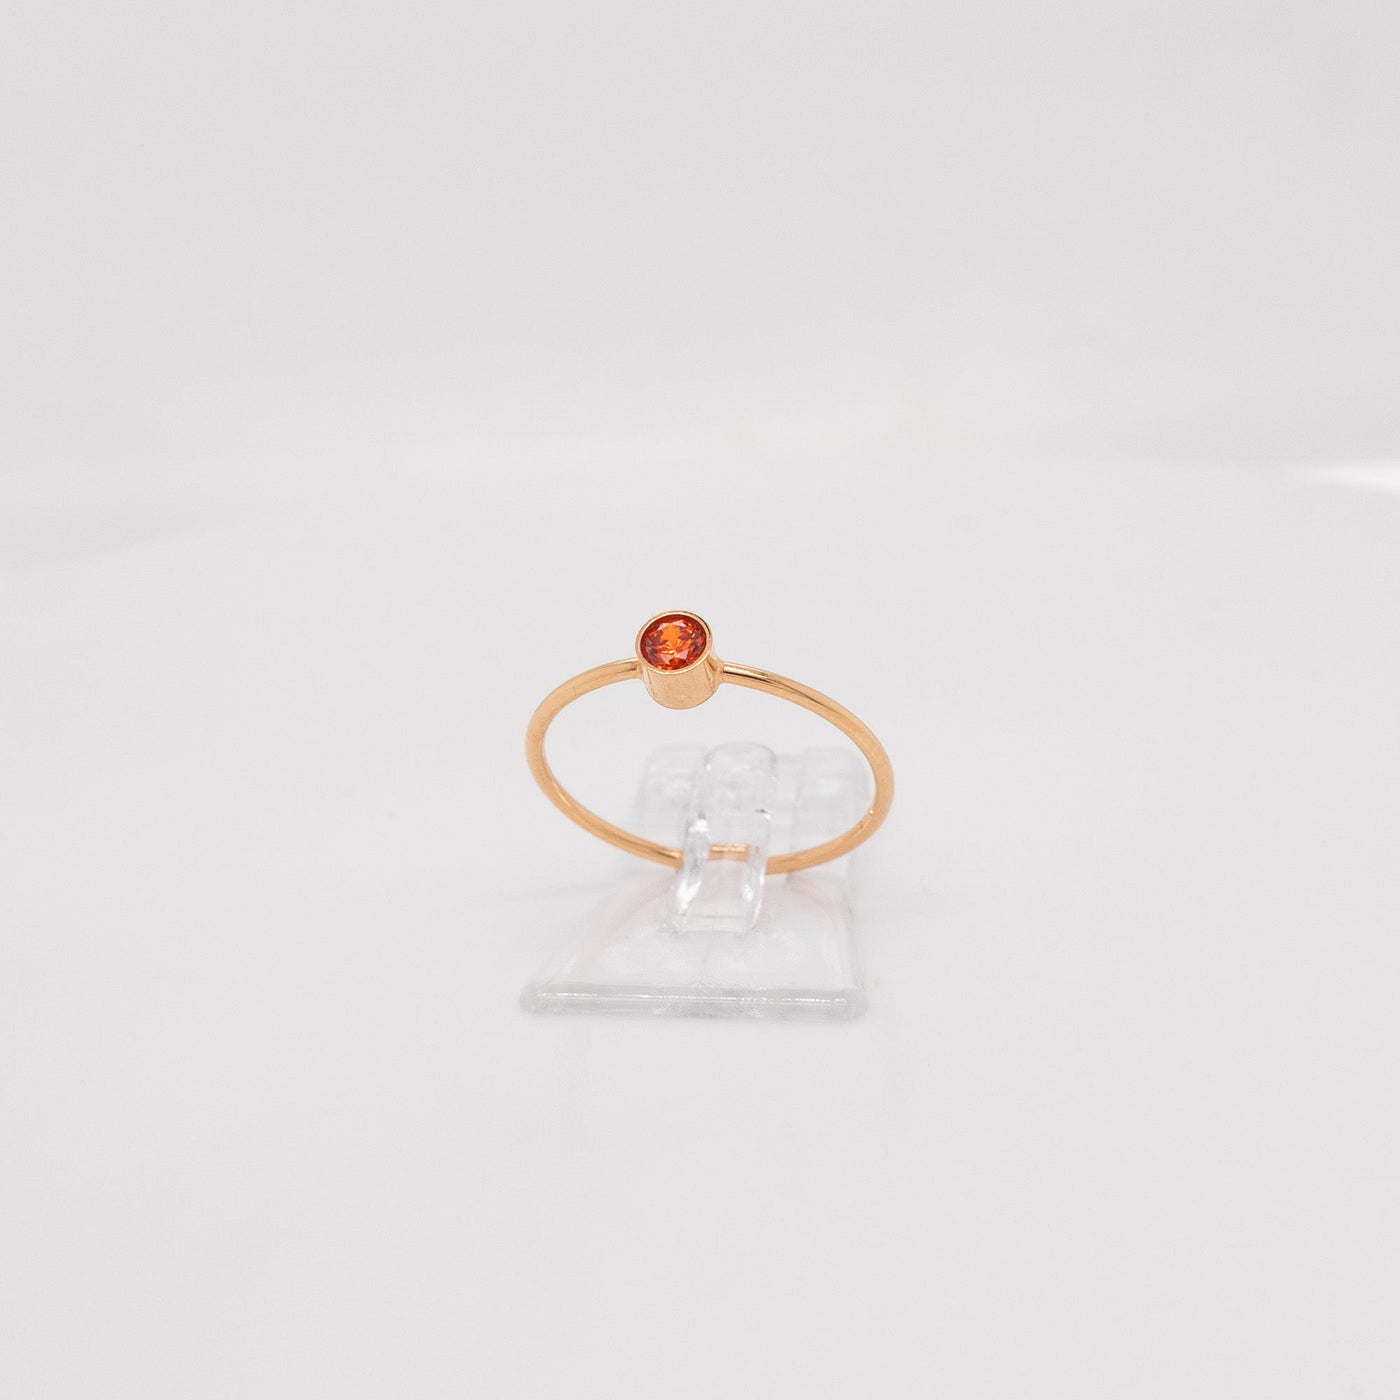 COSIMA MINI – Ring mit orangem Zirkonia